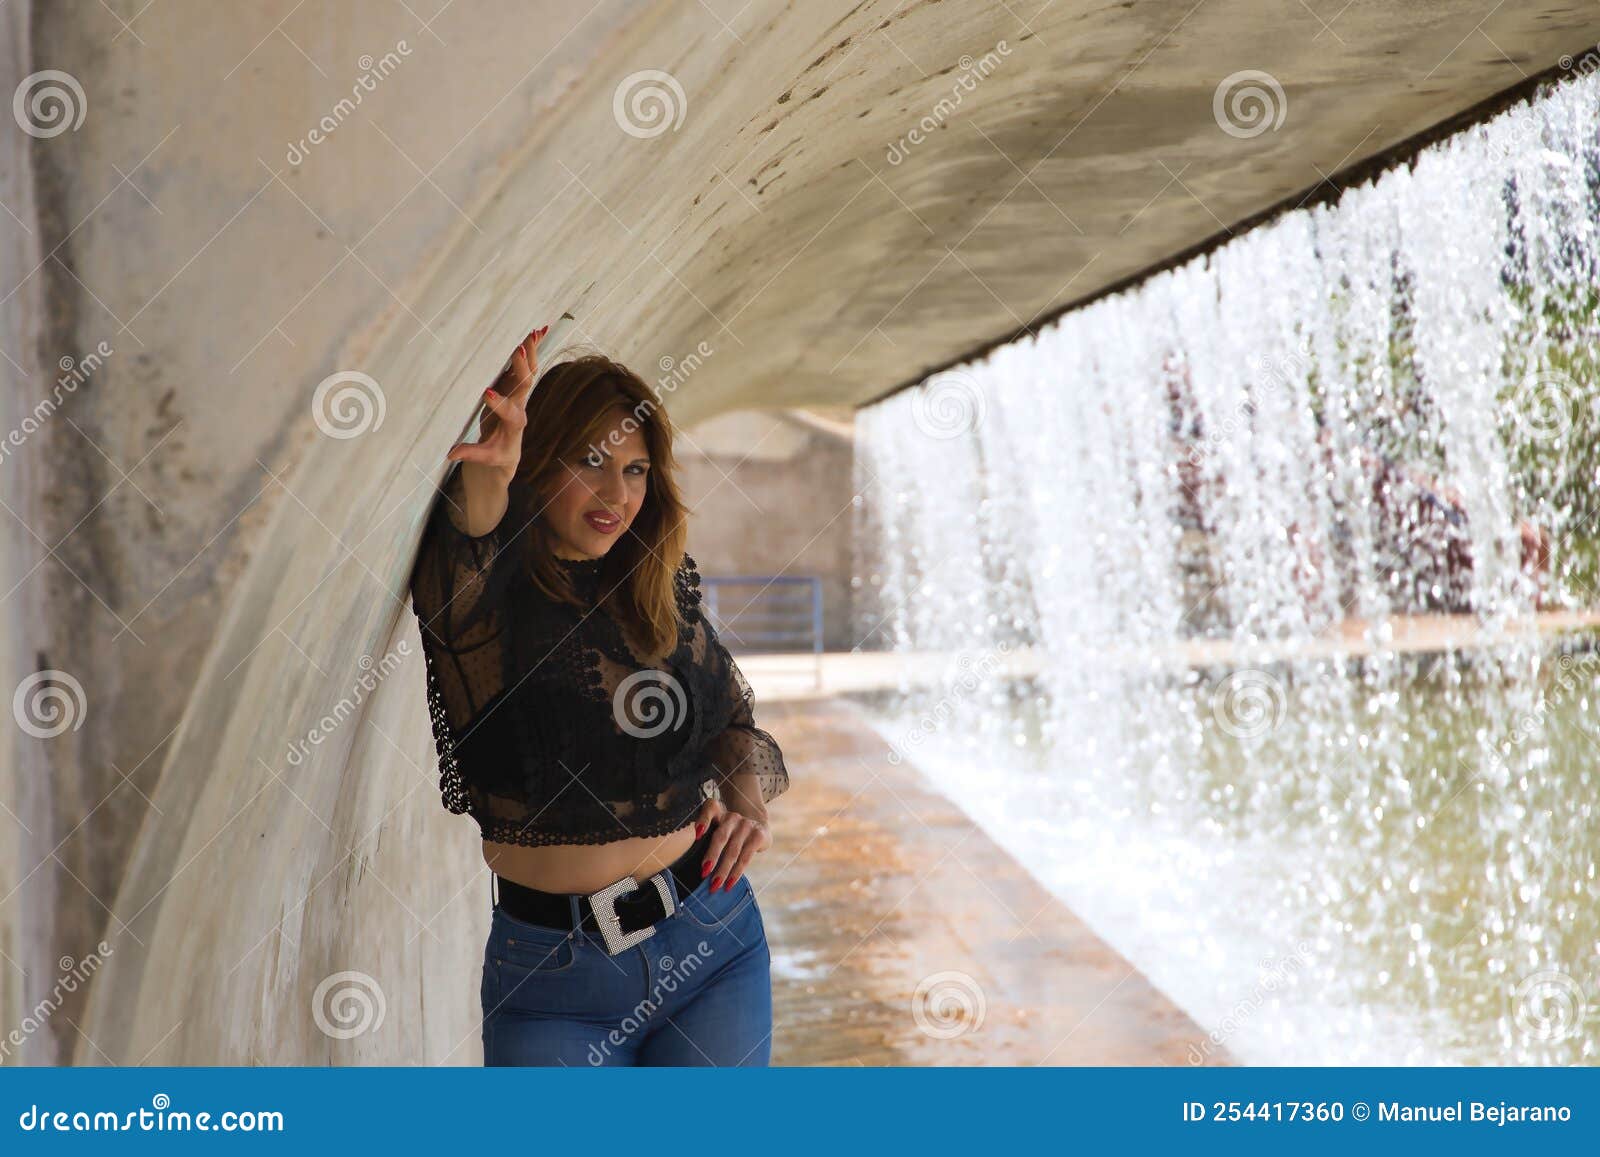 Atractiva Mujer Con Camisa Transparente Y Jeans Al Lado De Una Cascada En Una Sensual Y Provocadora Foto de archivo - Imagen de deseo, después: 254417360